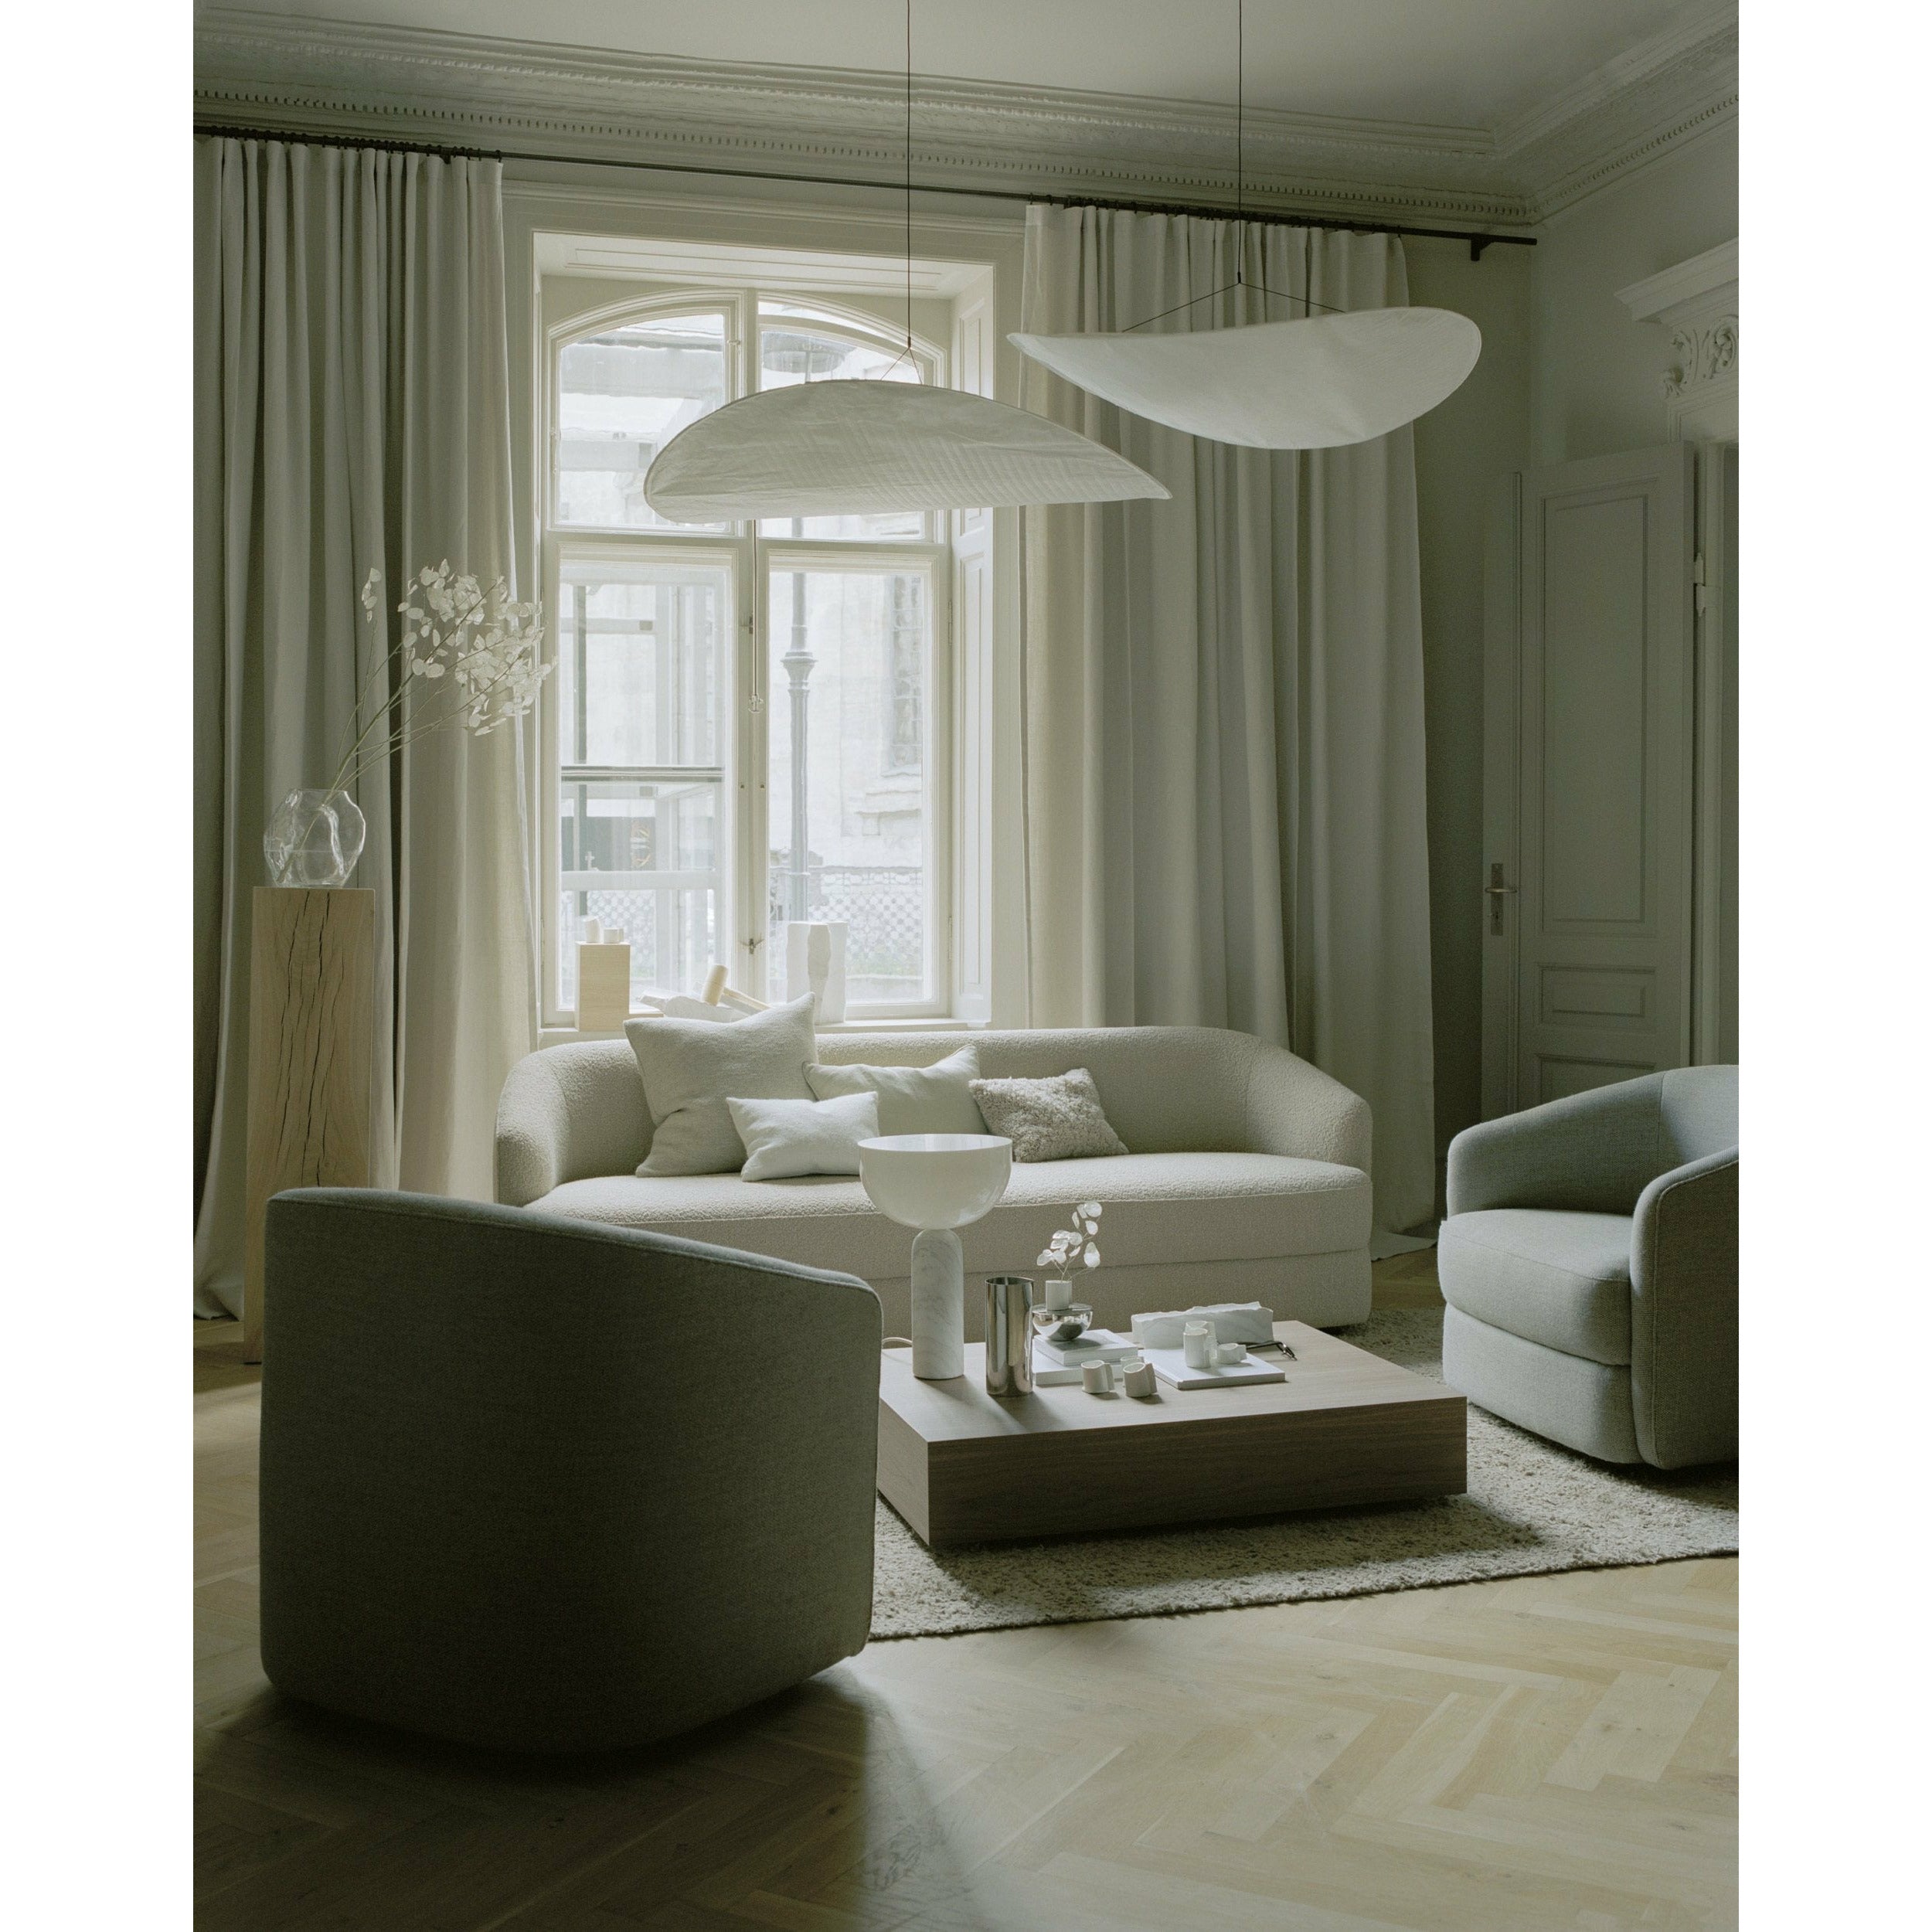 Nuove opere lampada da tavolo kizu bianco marmo Carrara, grande